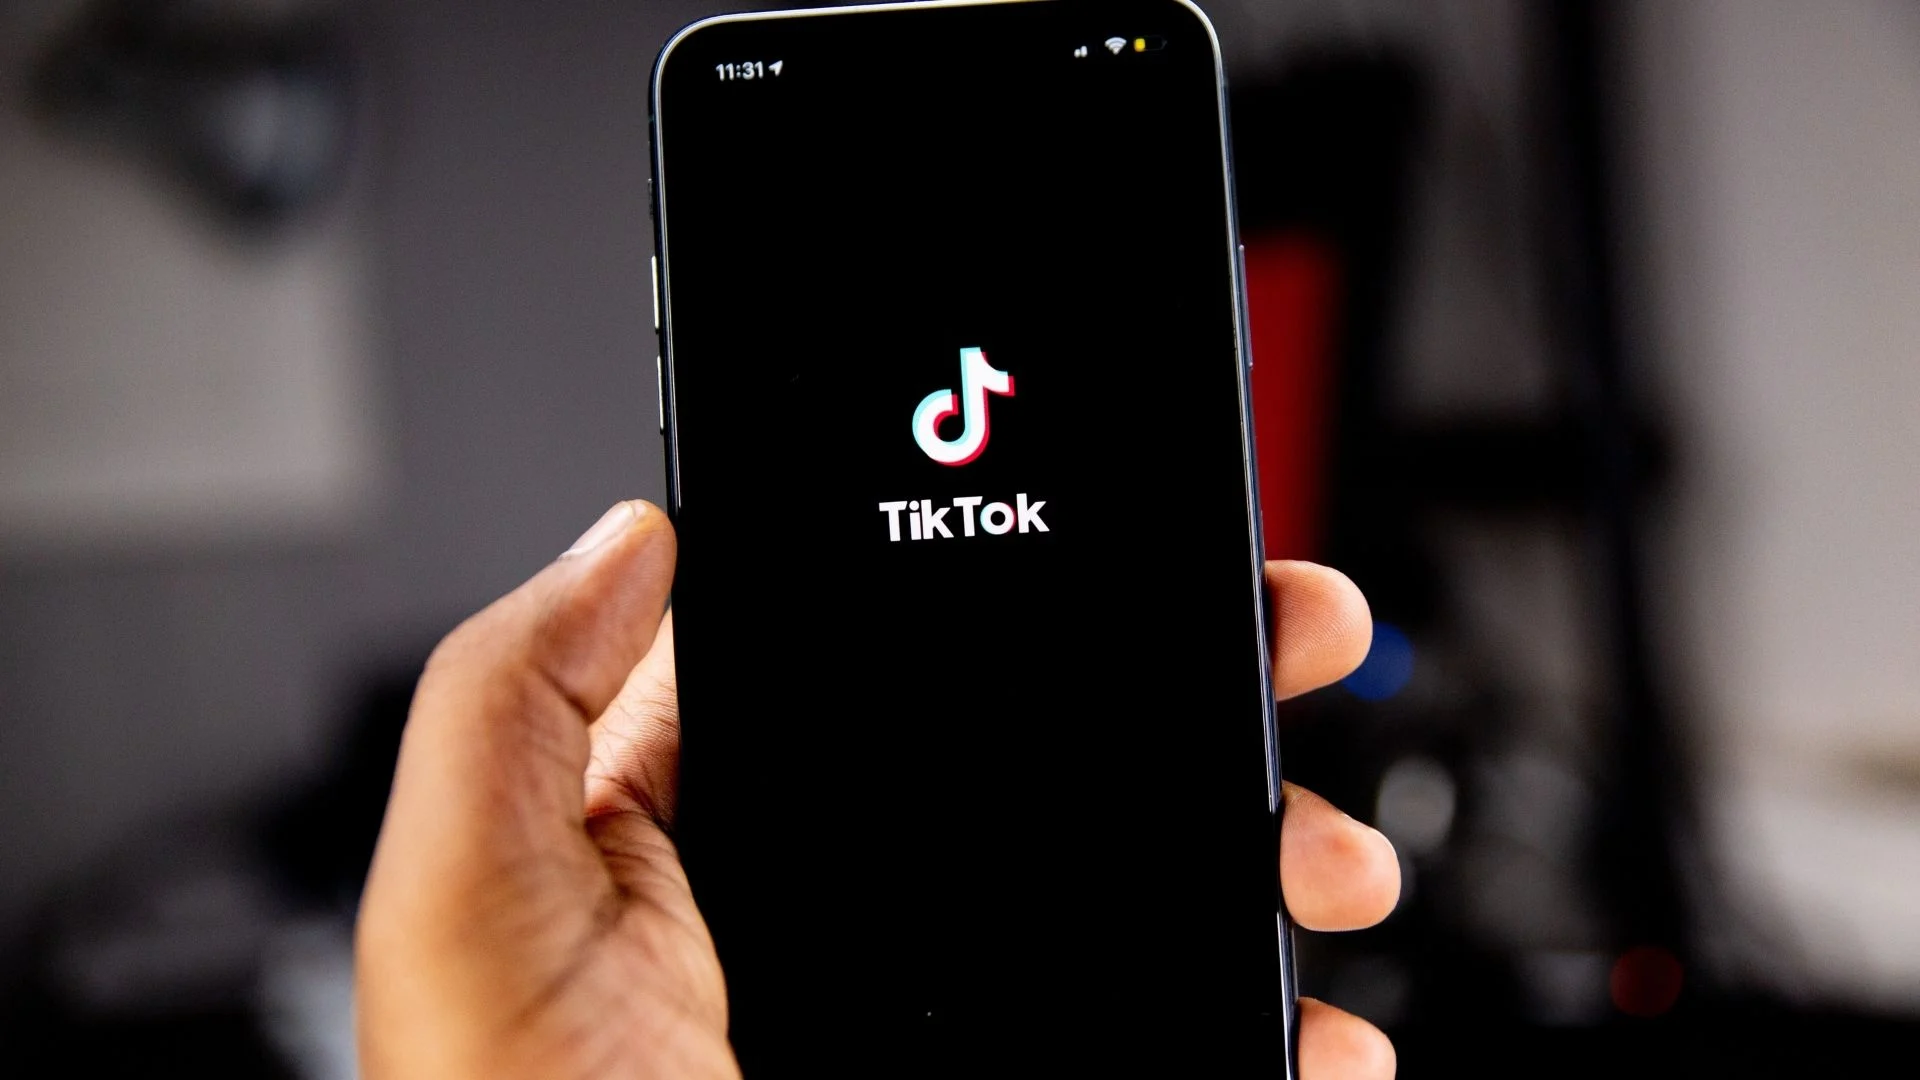 TikTok For Businesses - Influence Digital